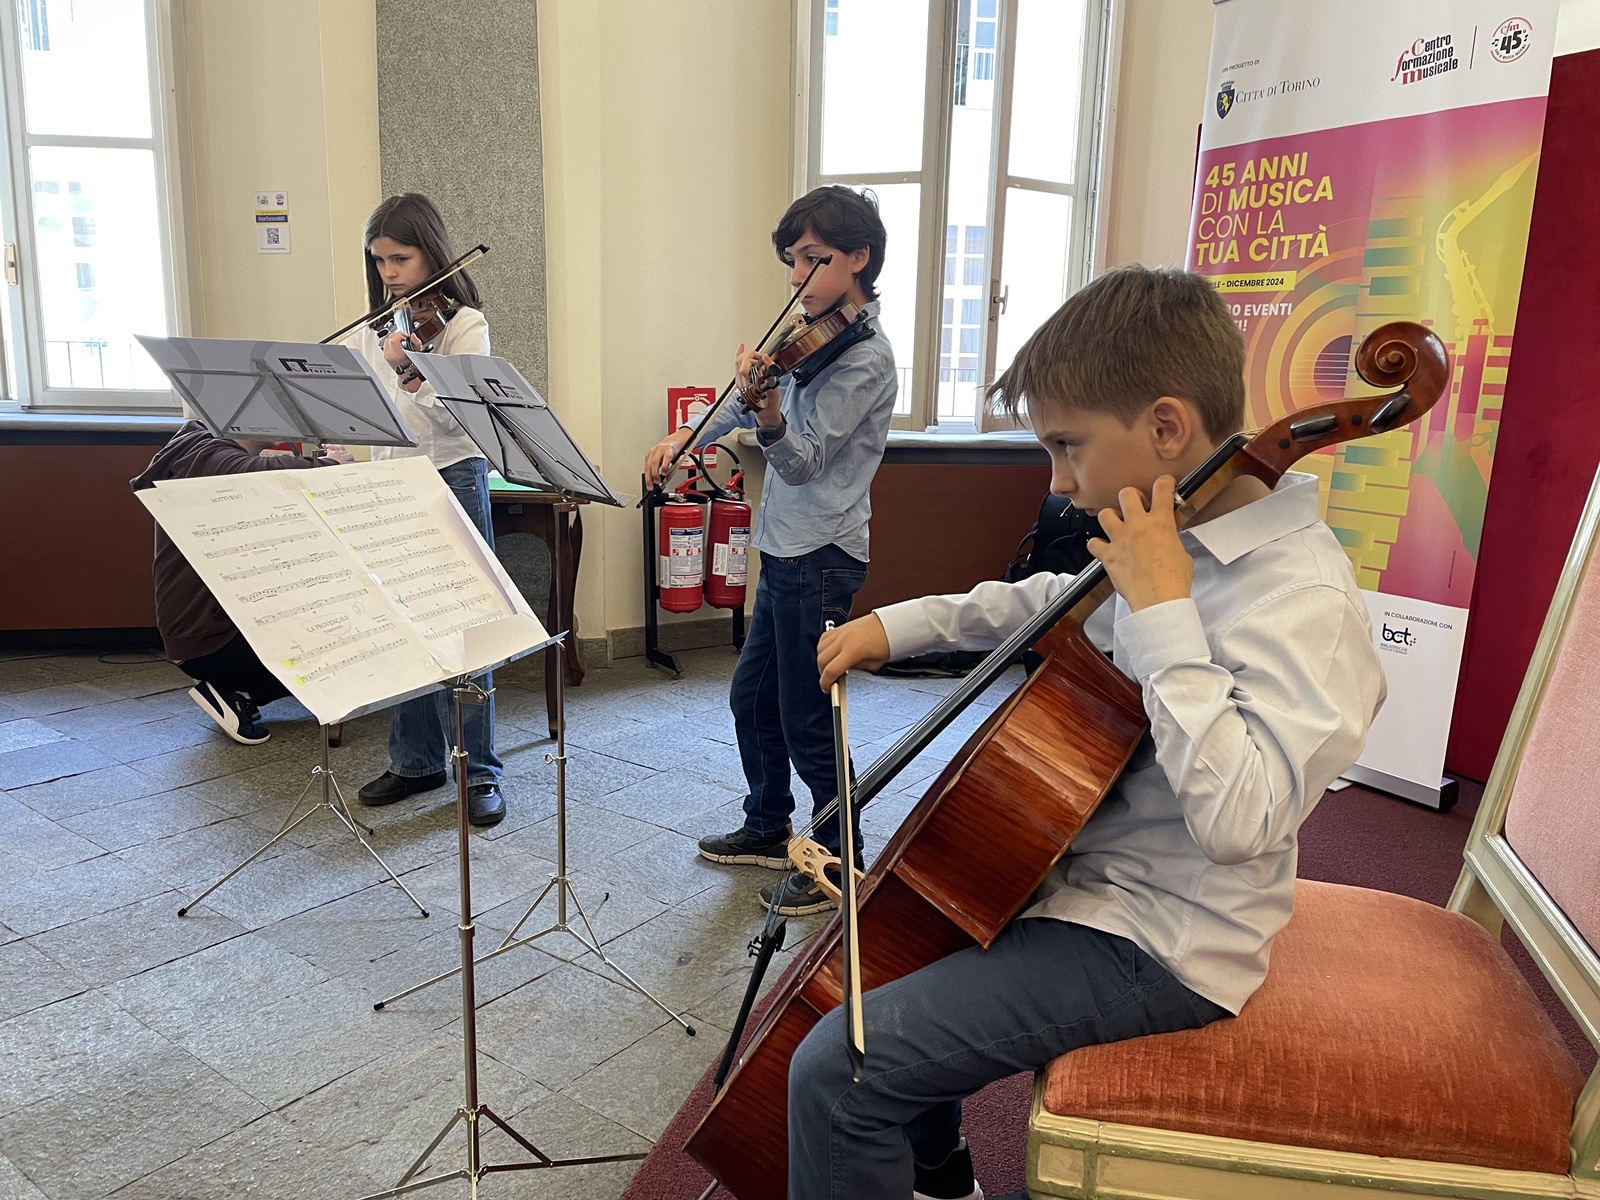 Il Centro di formazione musicale della Città di Torino festeggia 45 anni di attività